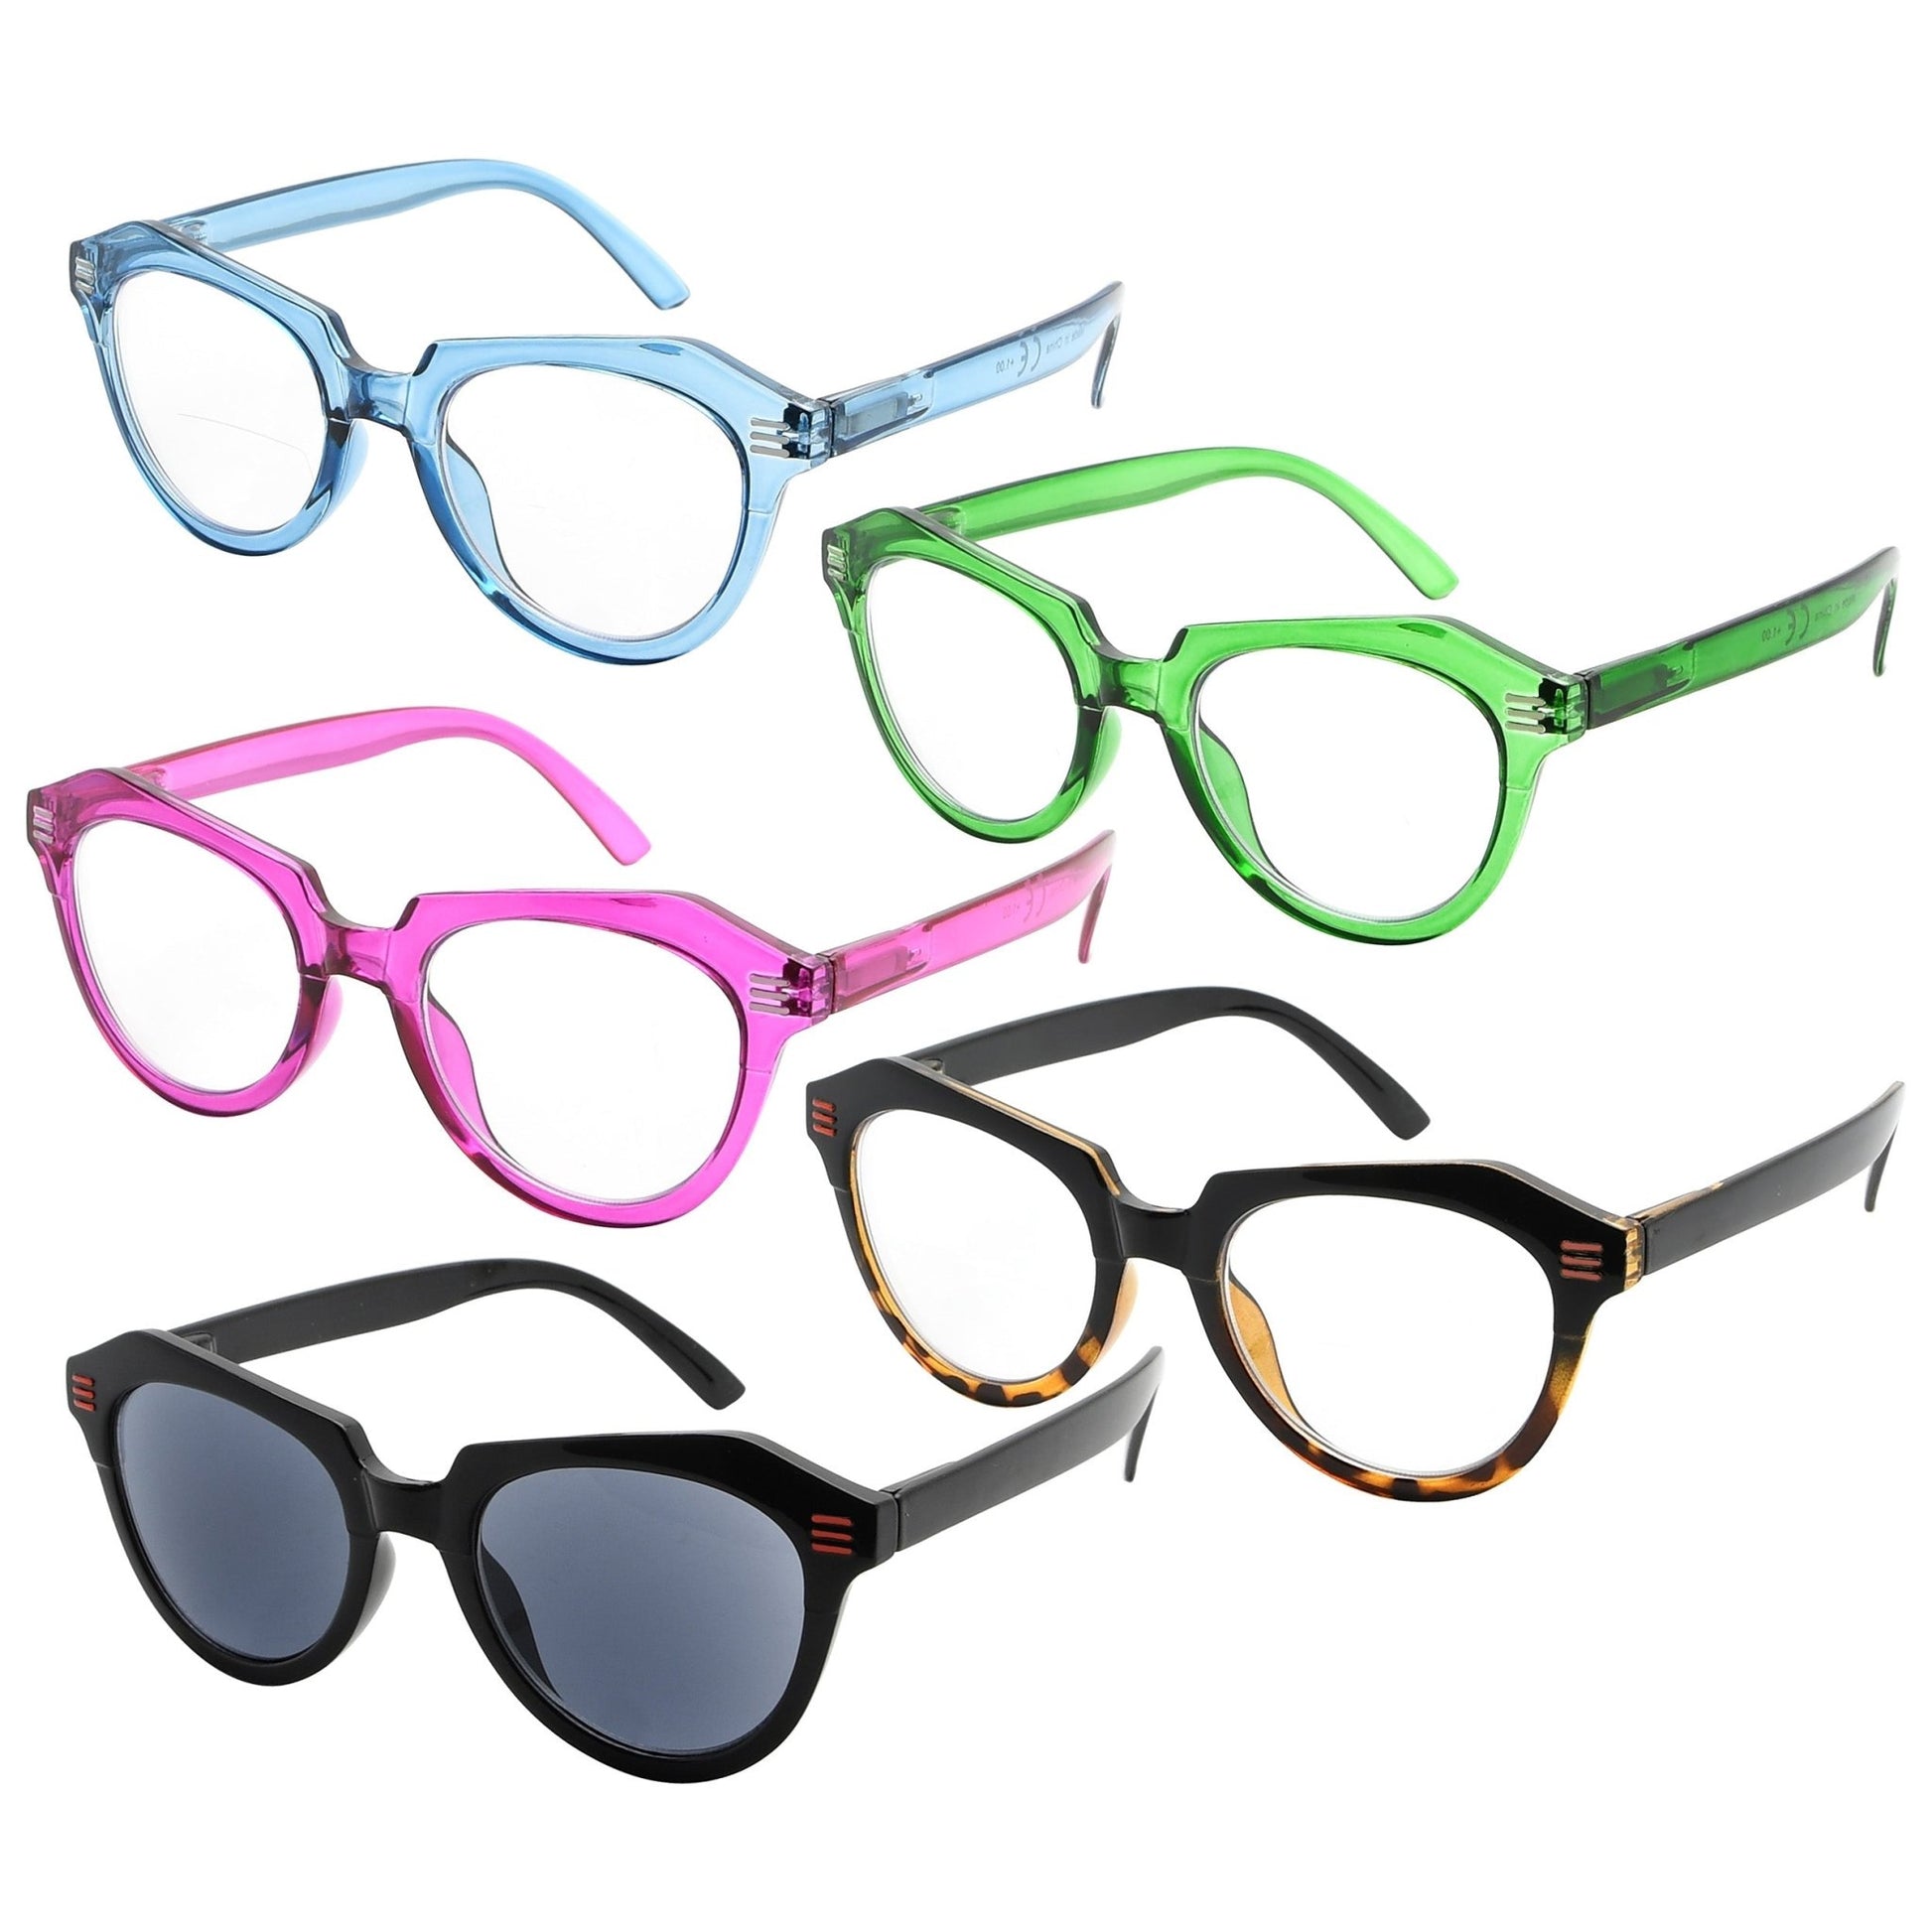 5 Pack Oversize Reading Glasses Cat-eye Readers Women R2110